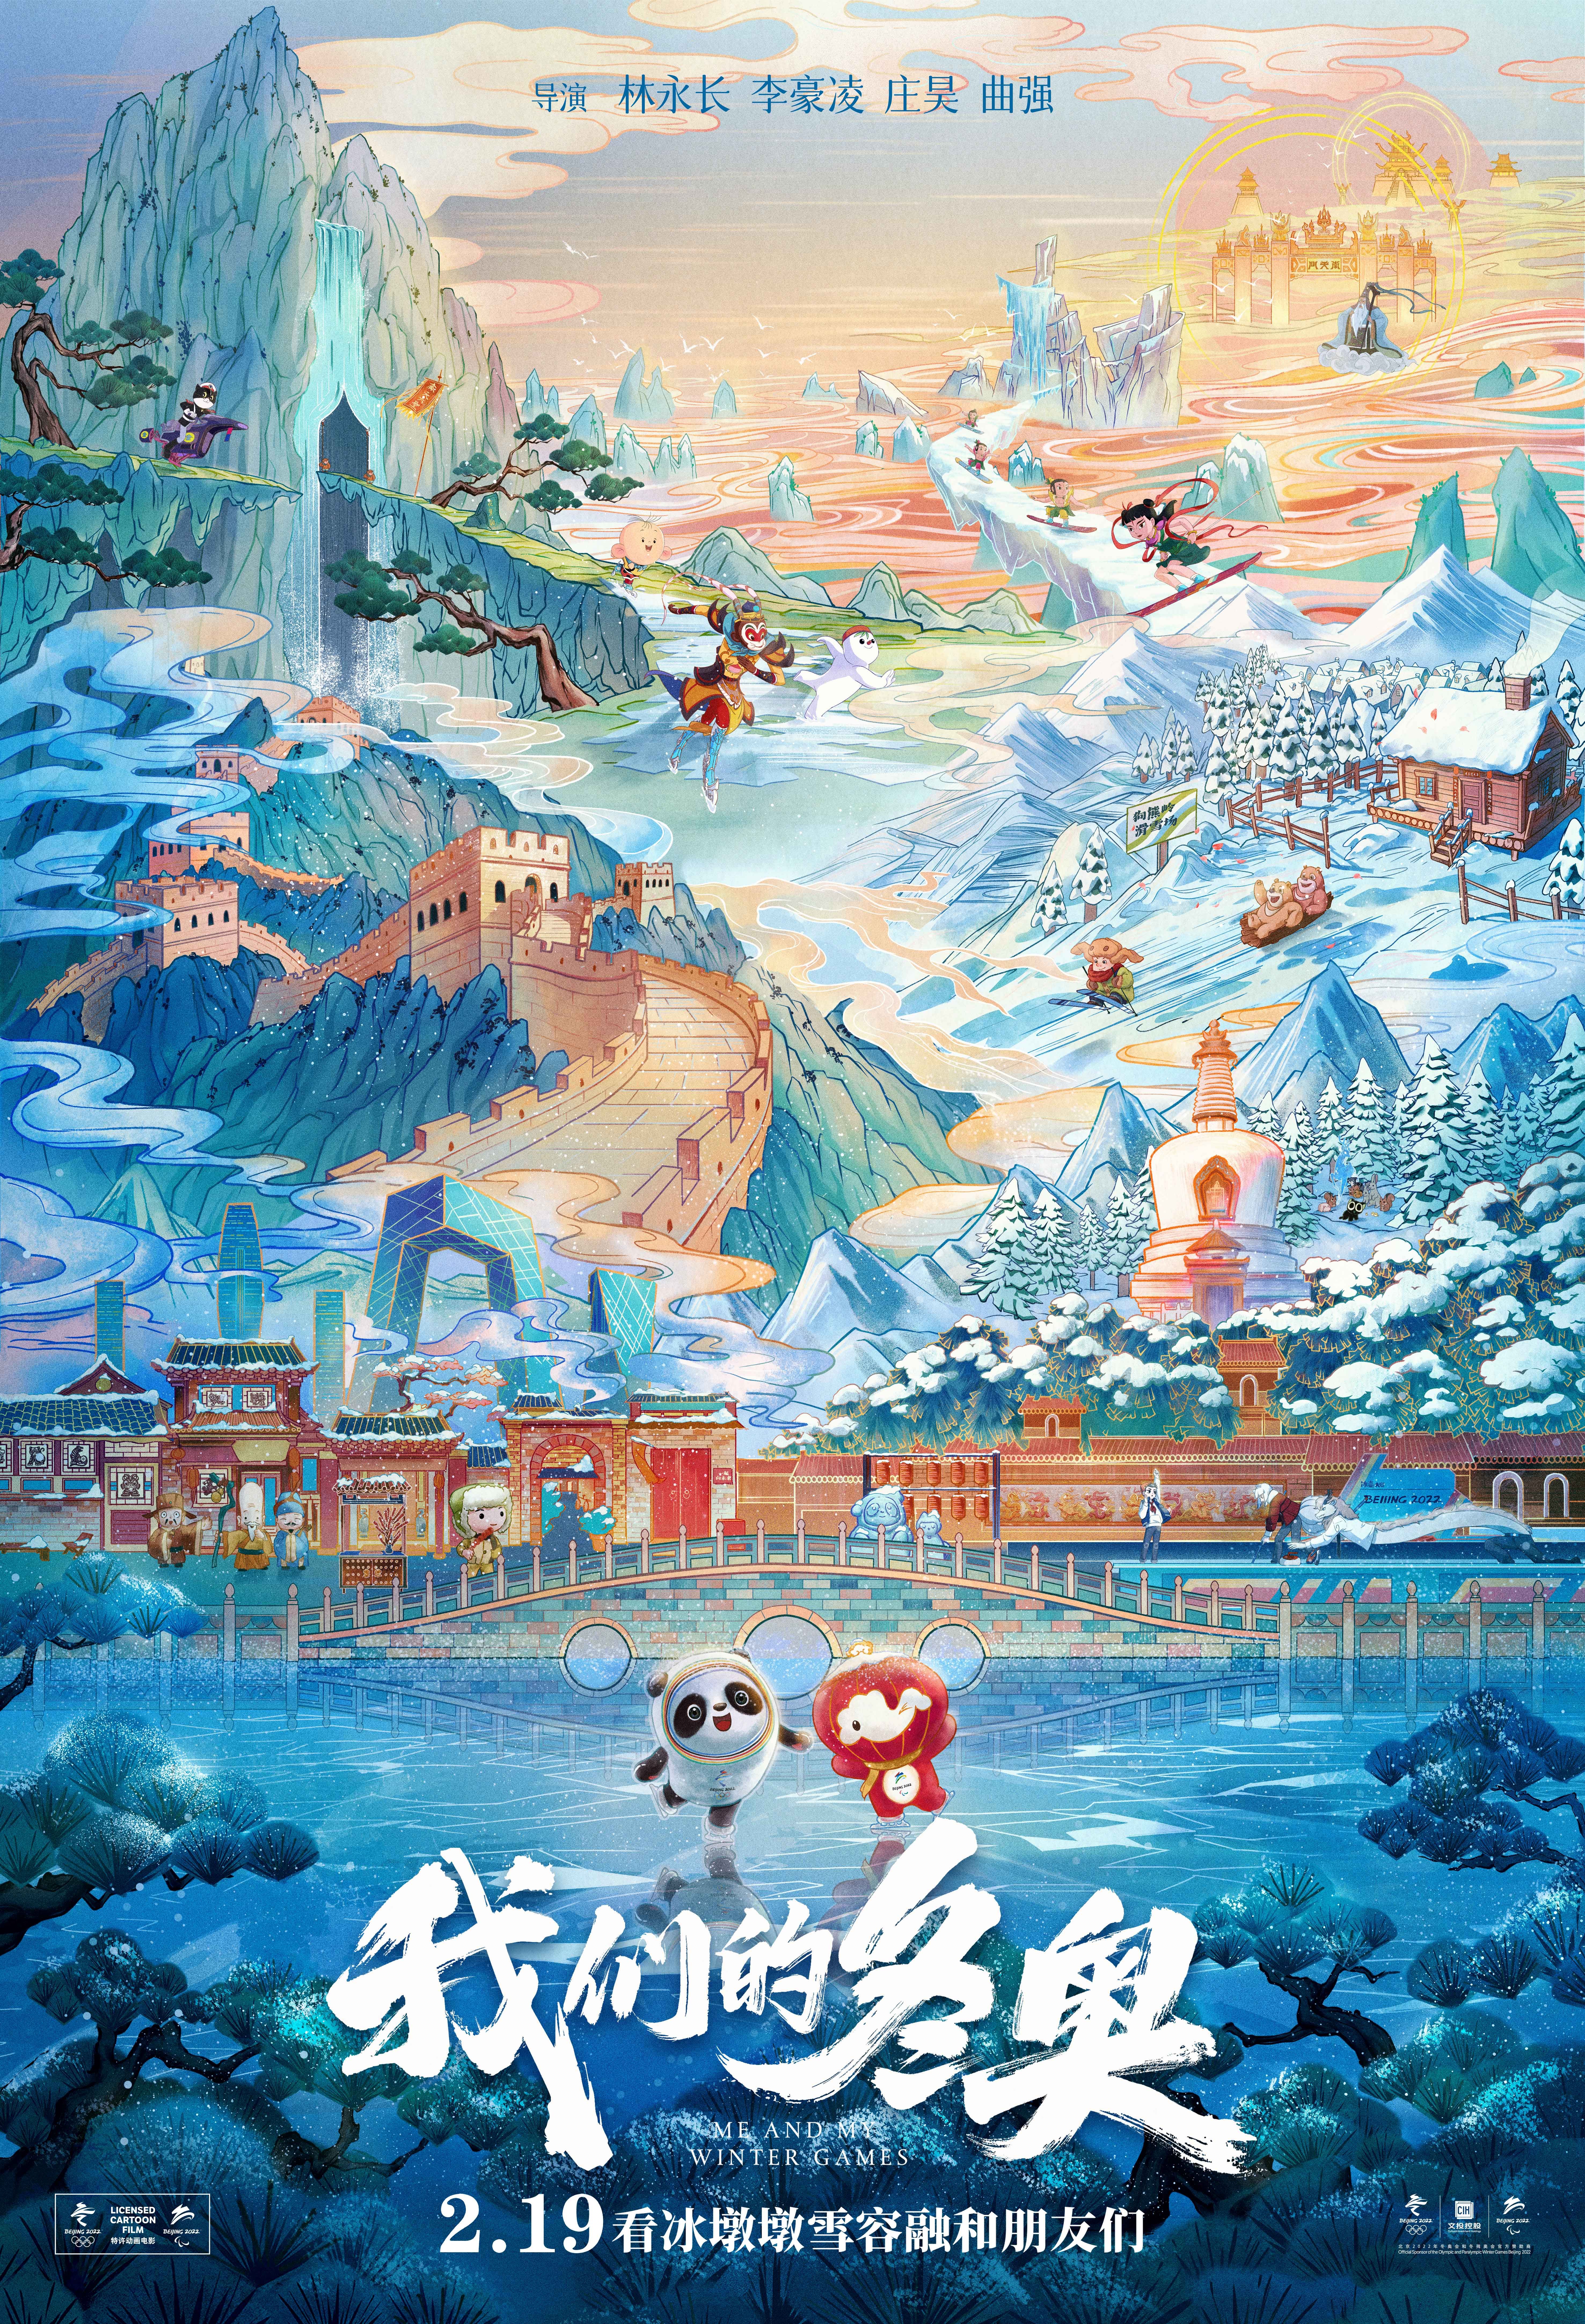 “冰墩墩”出道了 动画明星集体给它“搭戏”|全球连线| 北京冬奥组委